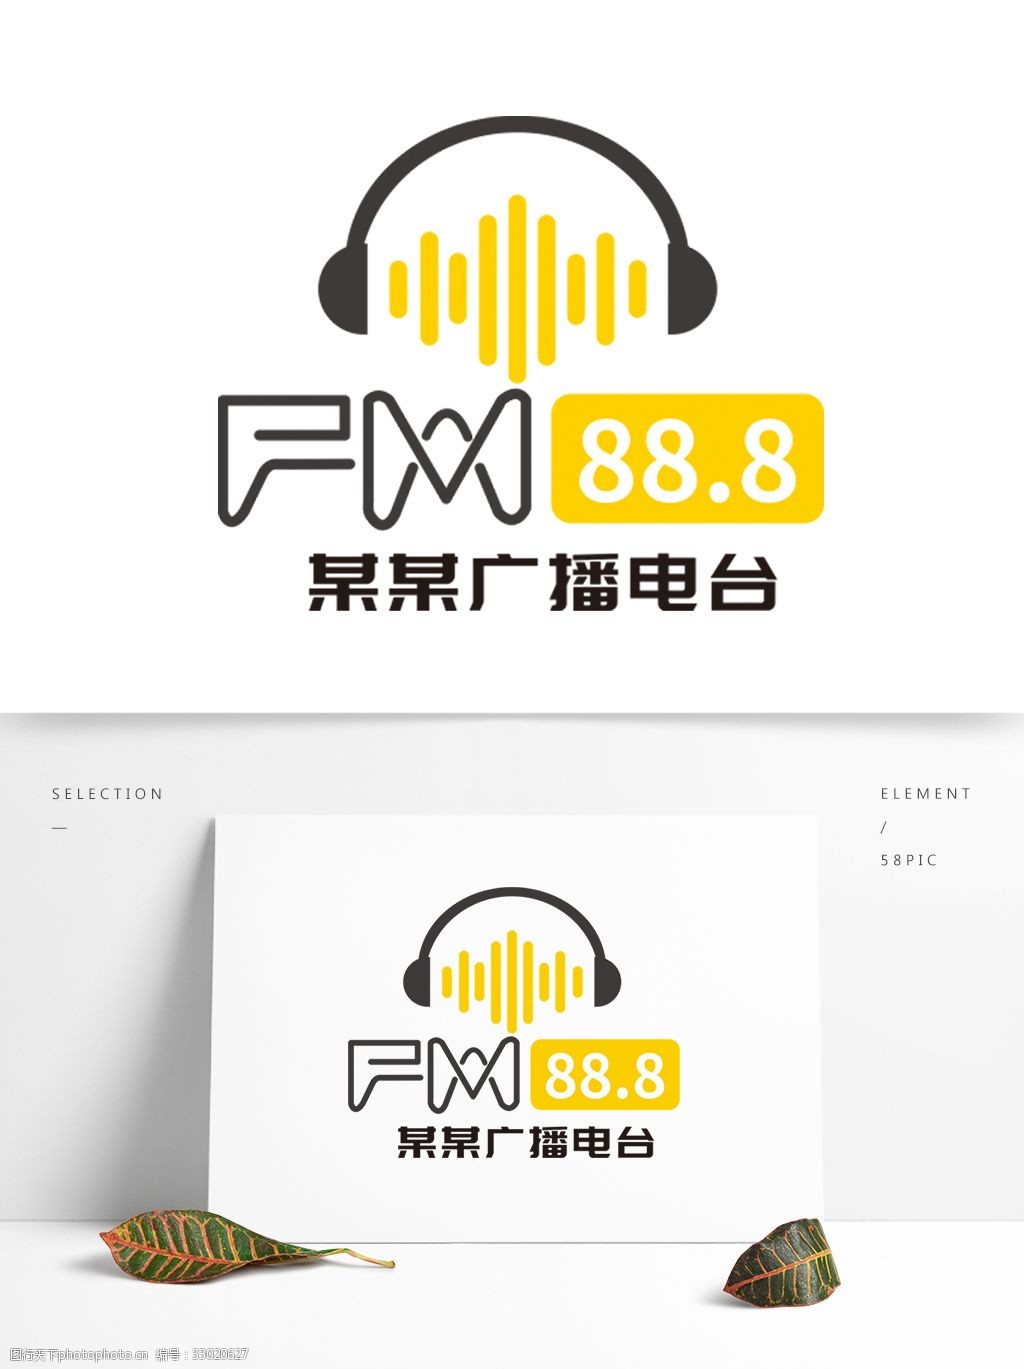 关键词:电台logo设计 电台 fm 电台标识 标志 cdr 矢量图 广播